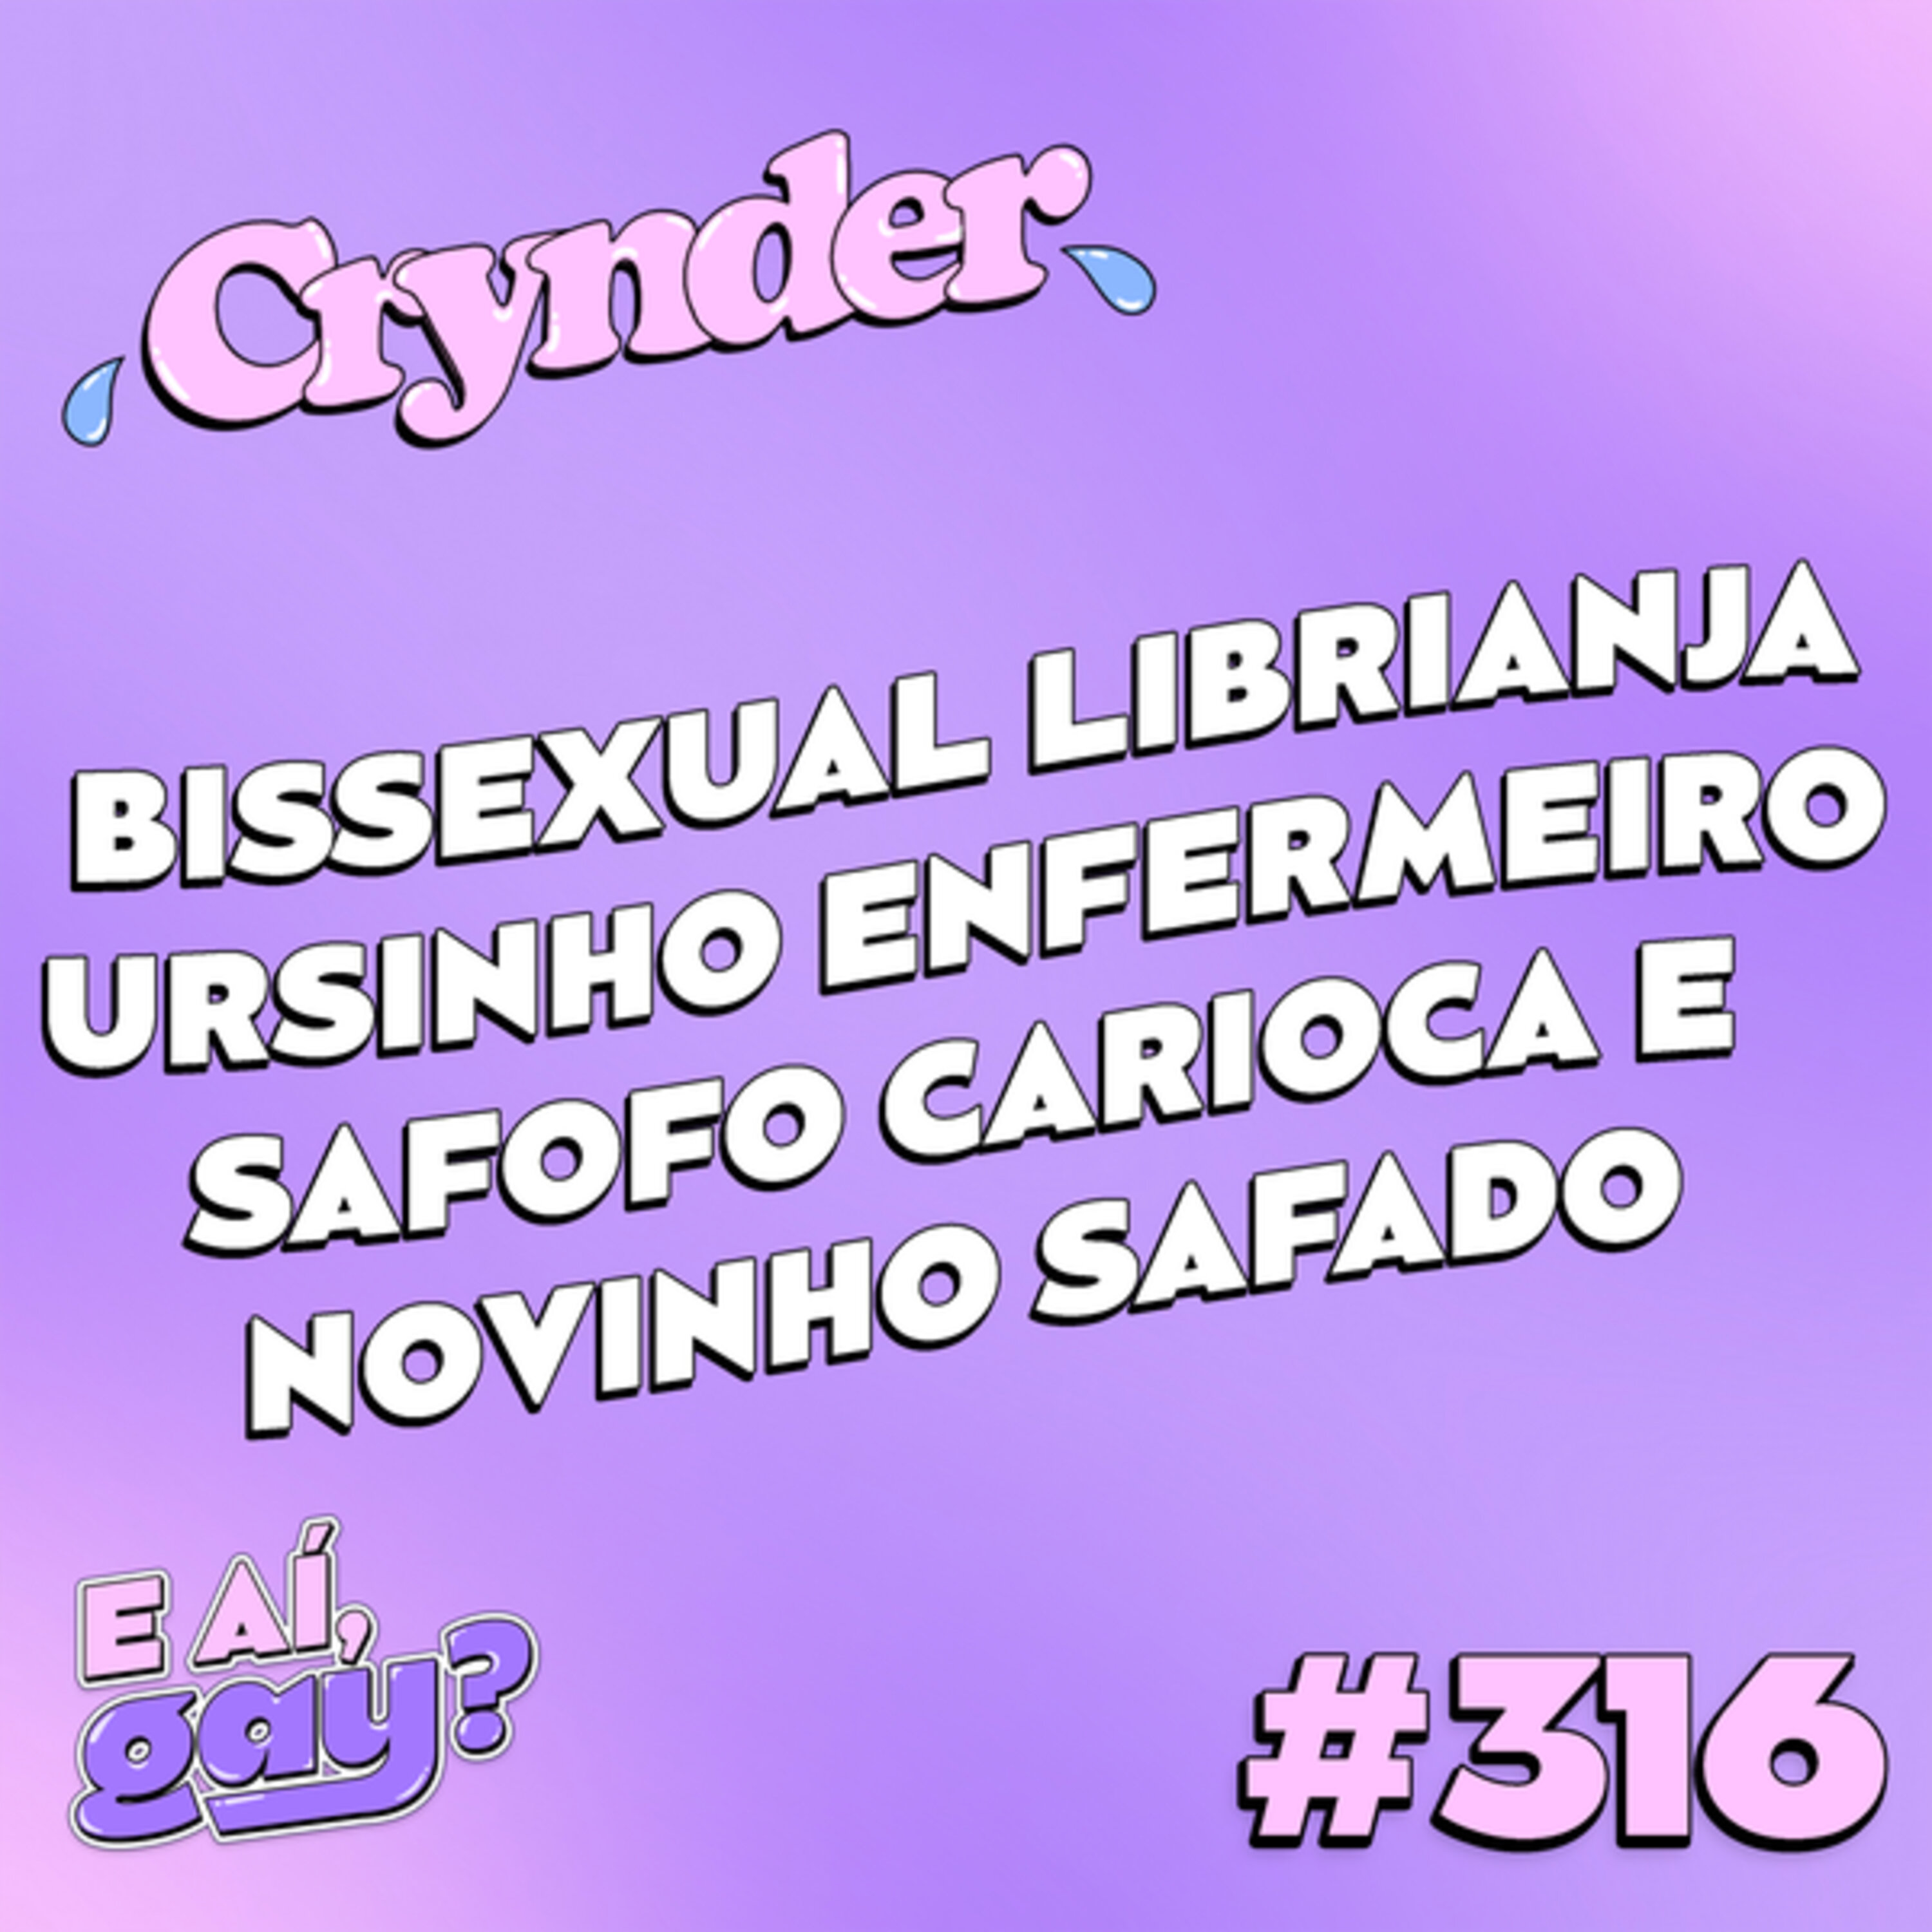 Crynder #316 - Bissexual Librianja, Ursinho enfermeiro, Safofo Carioca e Novinho safado